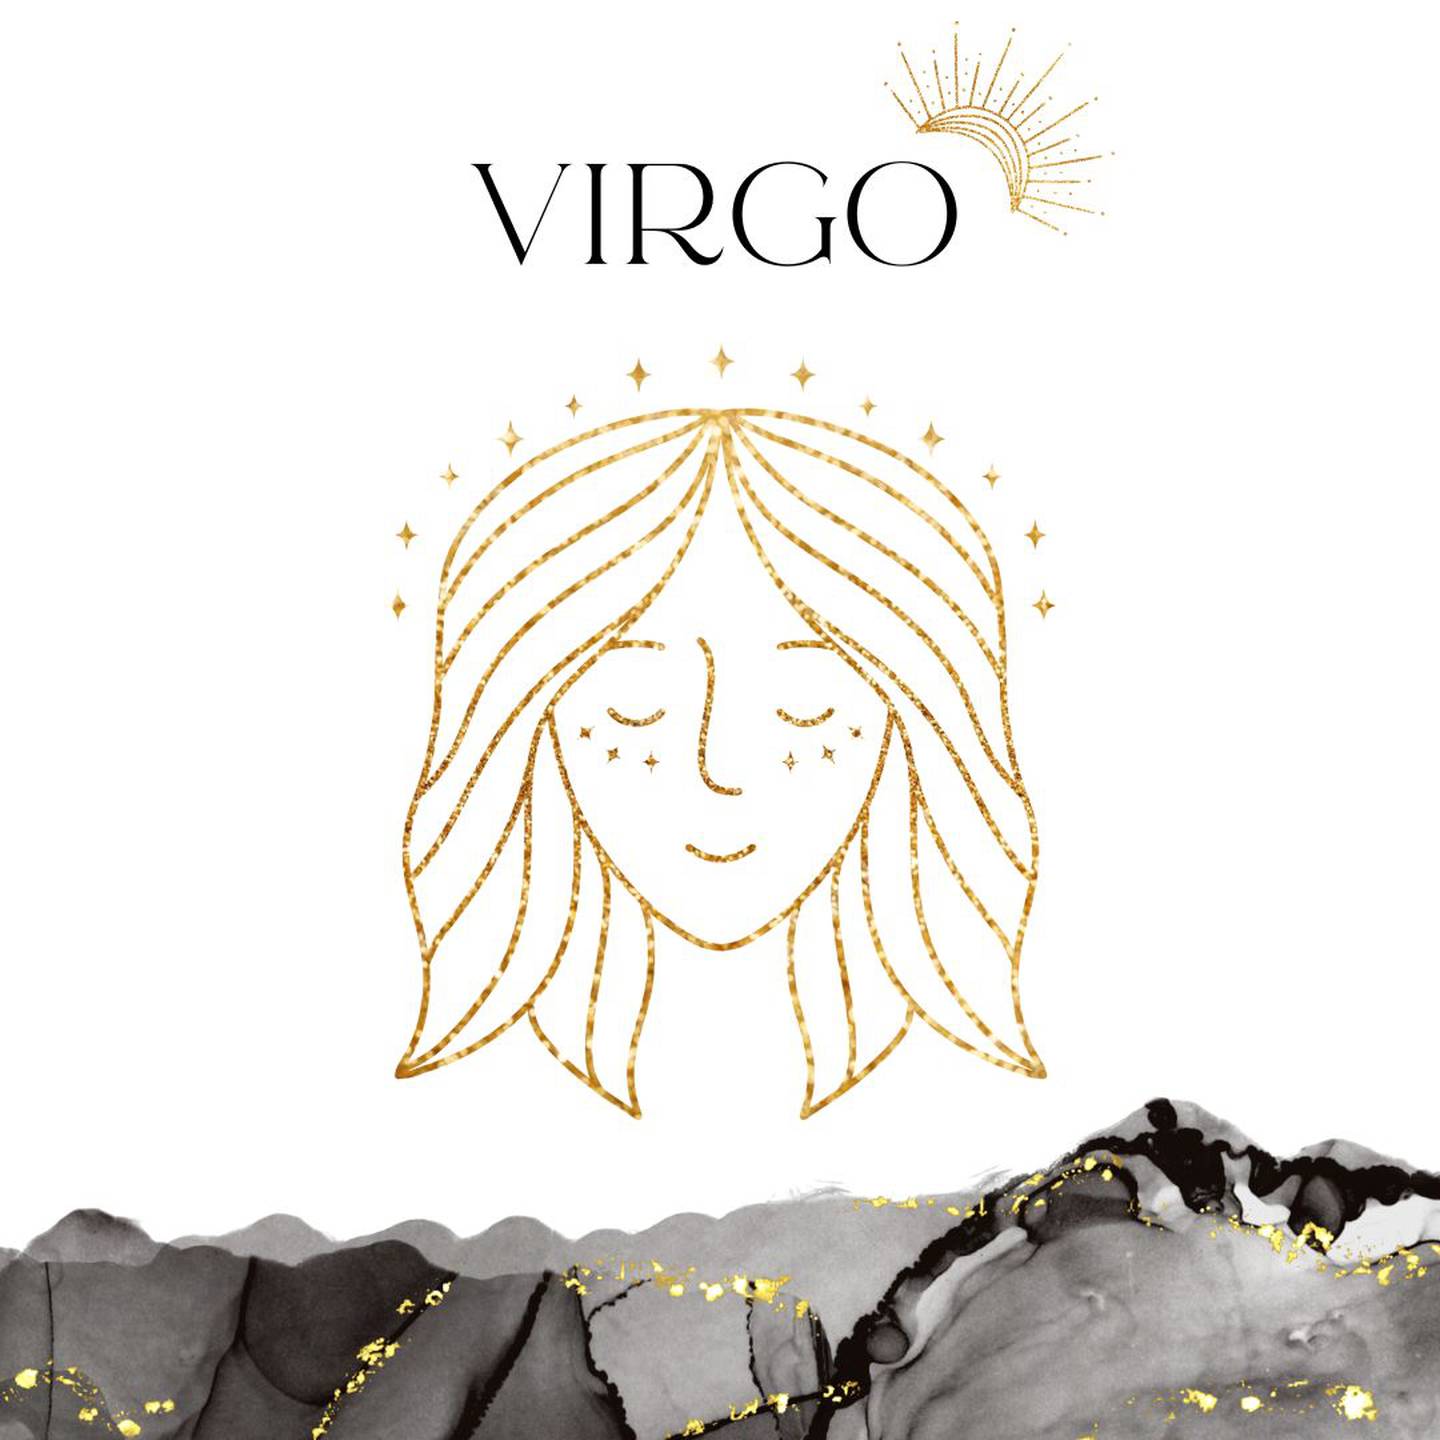 Palabra 'VIRGO' en letras grandes y negras en el centro. Debajo, símbolo del signo de Virgo: el rostro de una virgen en dorado.